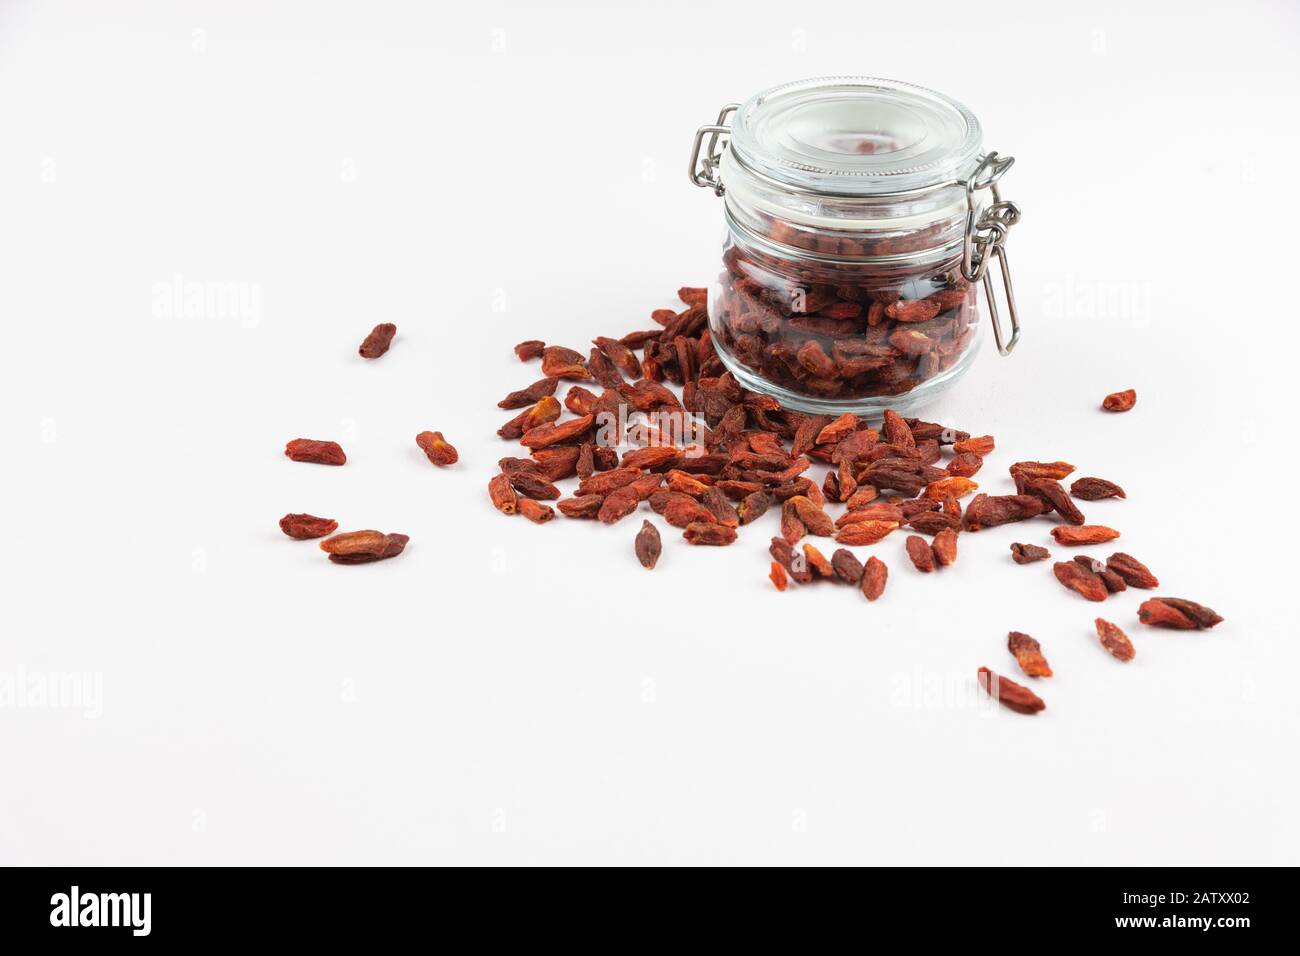 Glasbecher voller Goji-Beeren und mehr rote Beeren auf dem Tisch, isoliert auf weißem Hintergrund Stockfoto